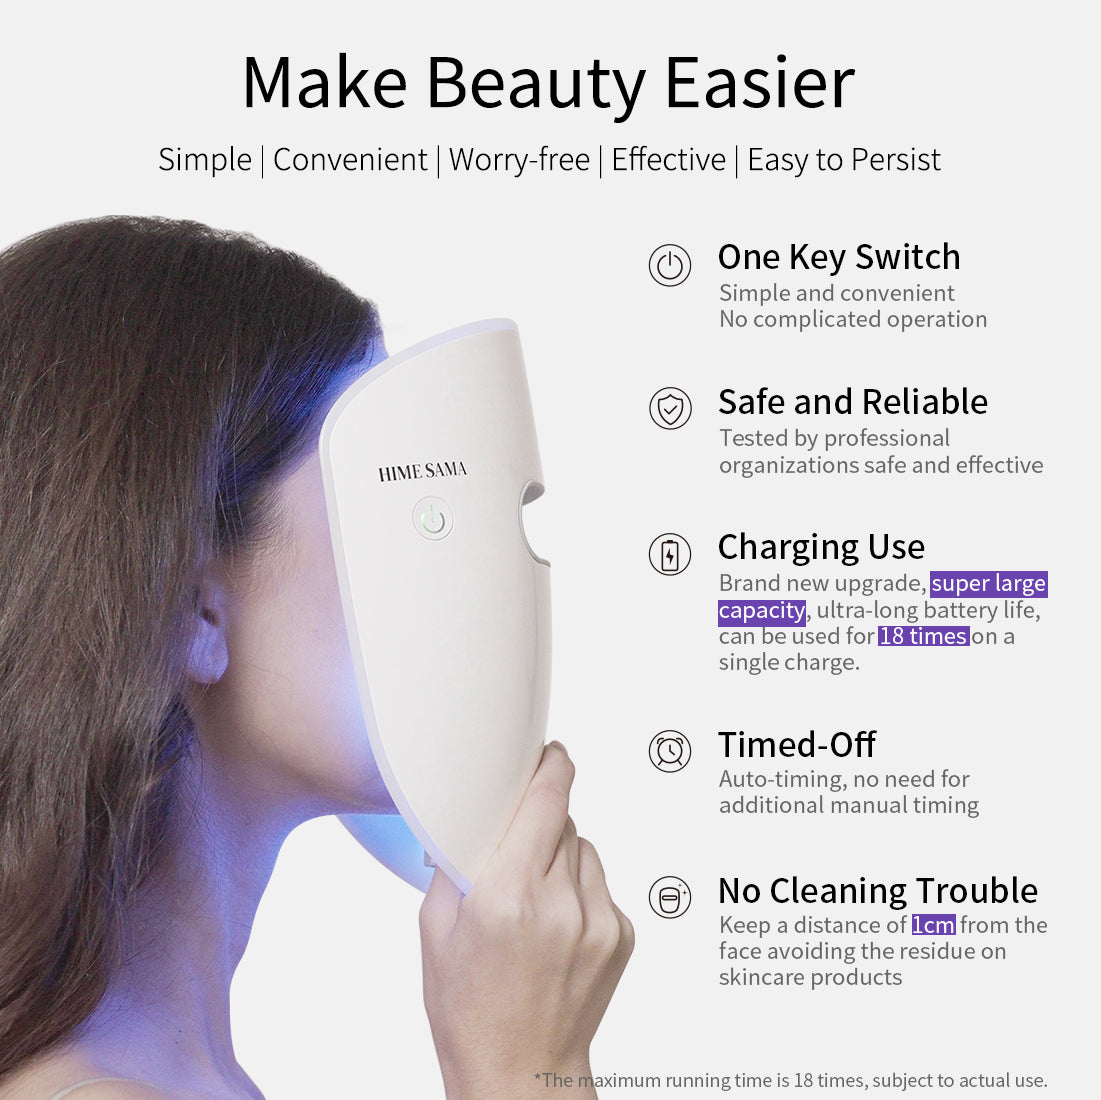 HIME SAMA LED-Gesichtsmaske, Lichttherapie, Gesichts-Photonen-Schönheitsgerät (Miracle MAX)